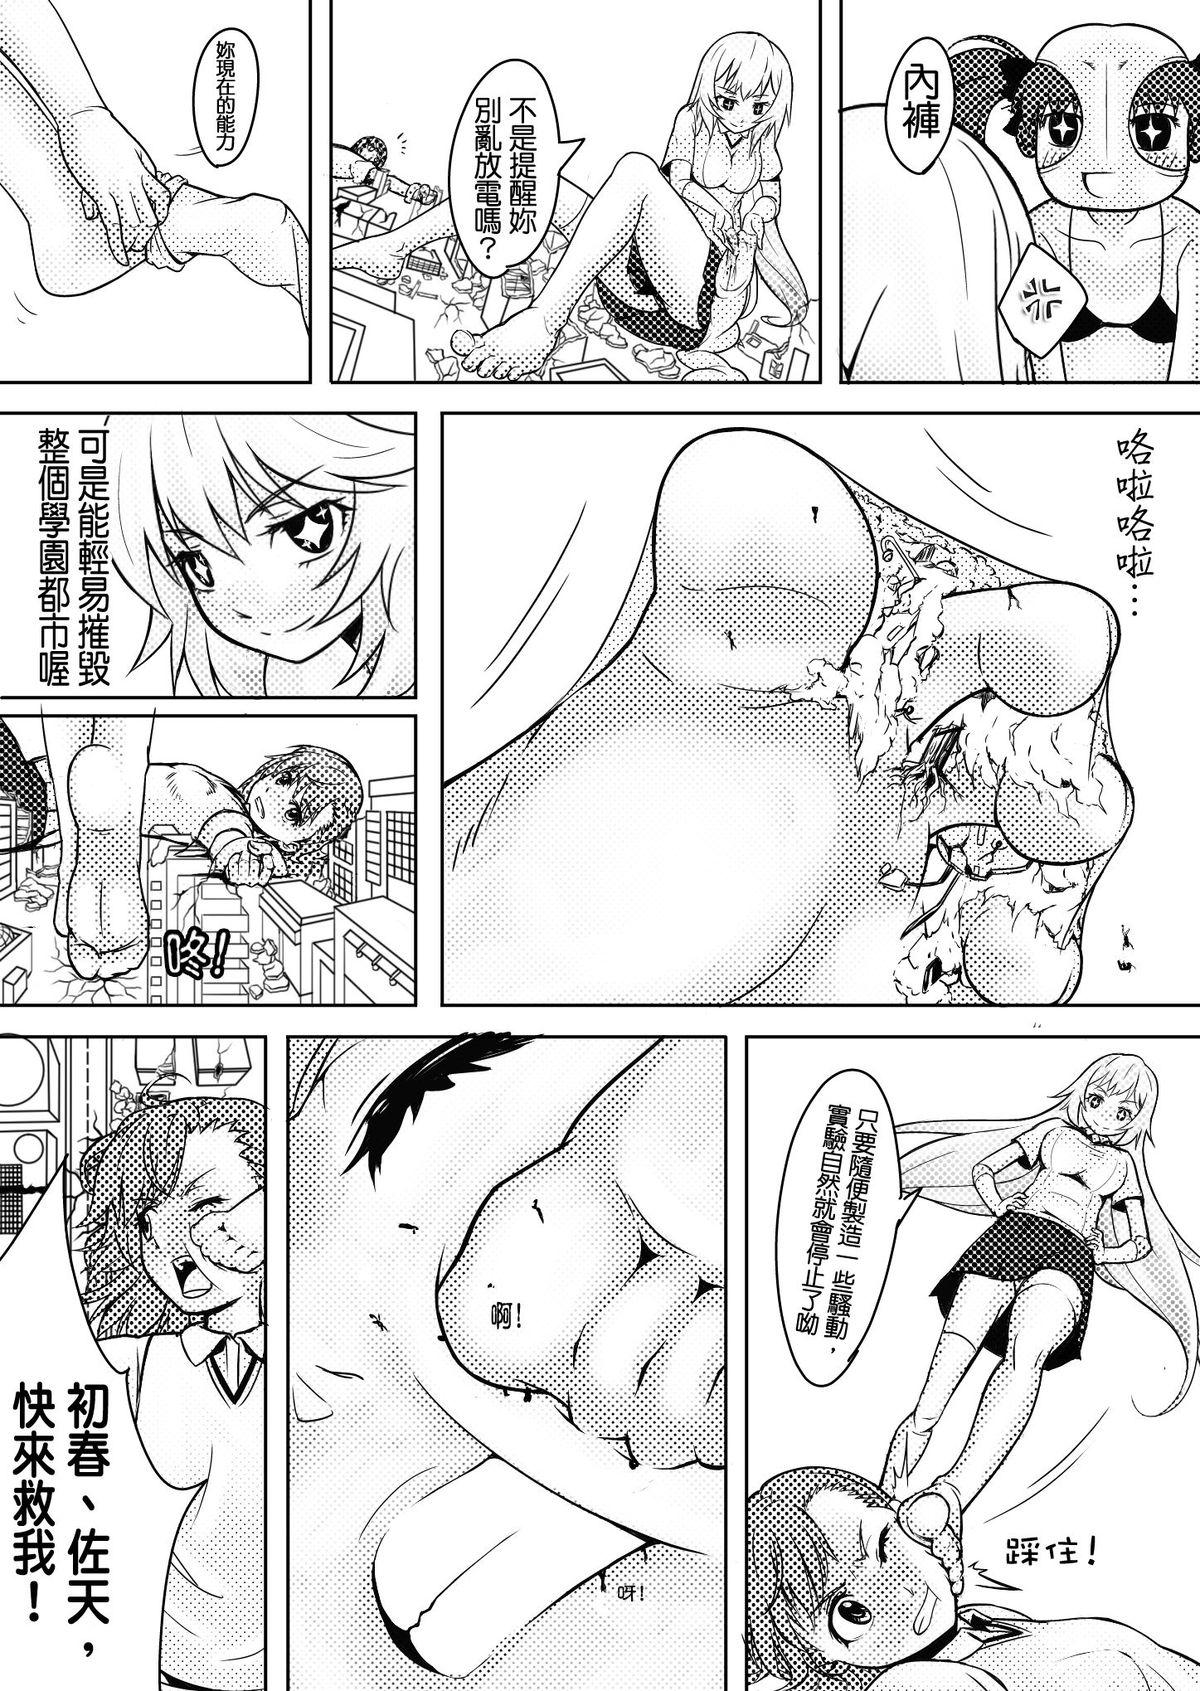 Secret Toaru Shingeki no S Railgun - Toaru kagaku no railgun Lips - Page 7